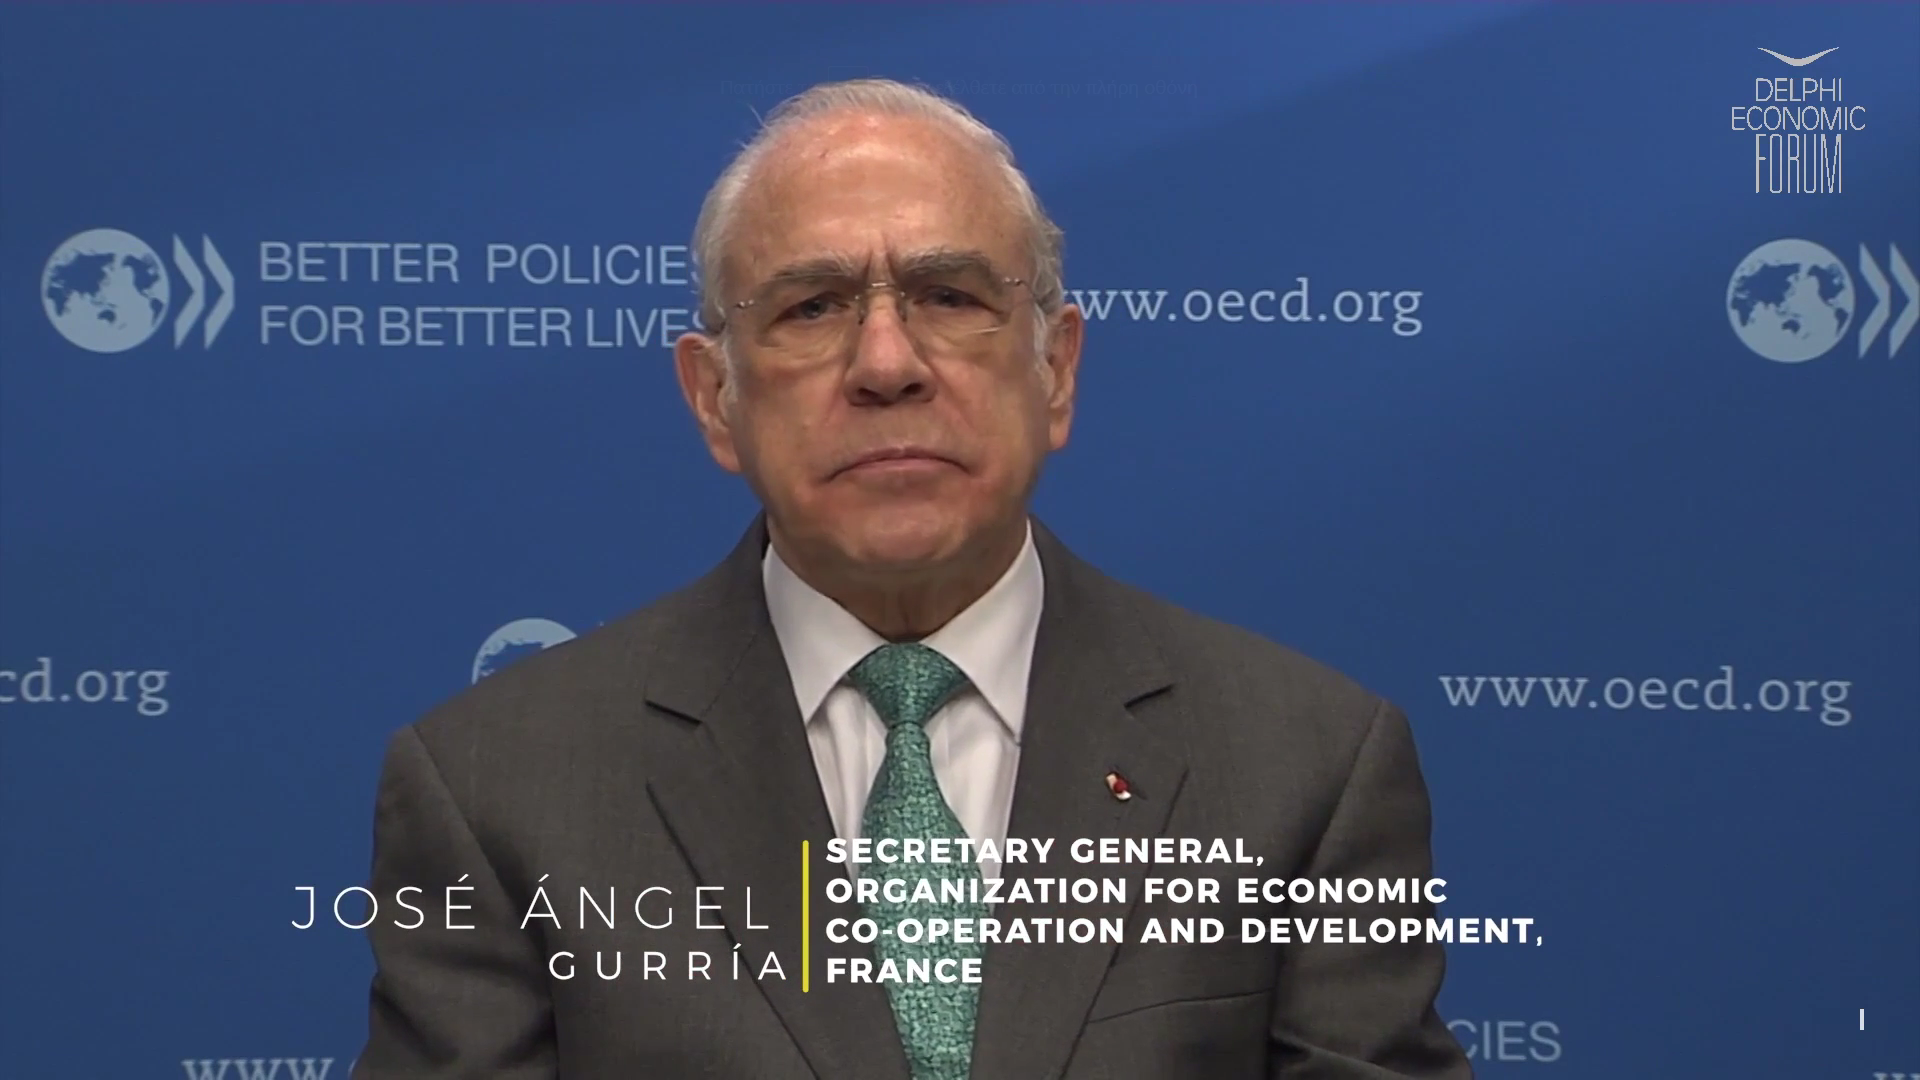 José Ángel Gurría: Το παγκόσμιο ΑΕΠ προβλέπεται να αυξηθεί κατά 5,6% το 2021